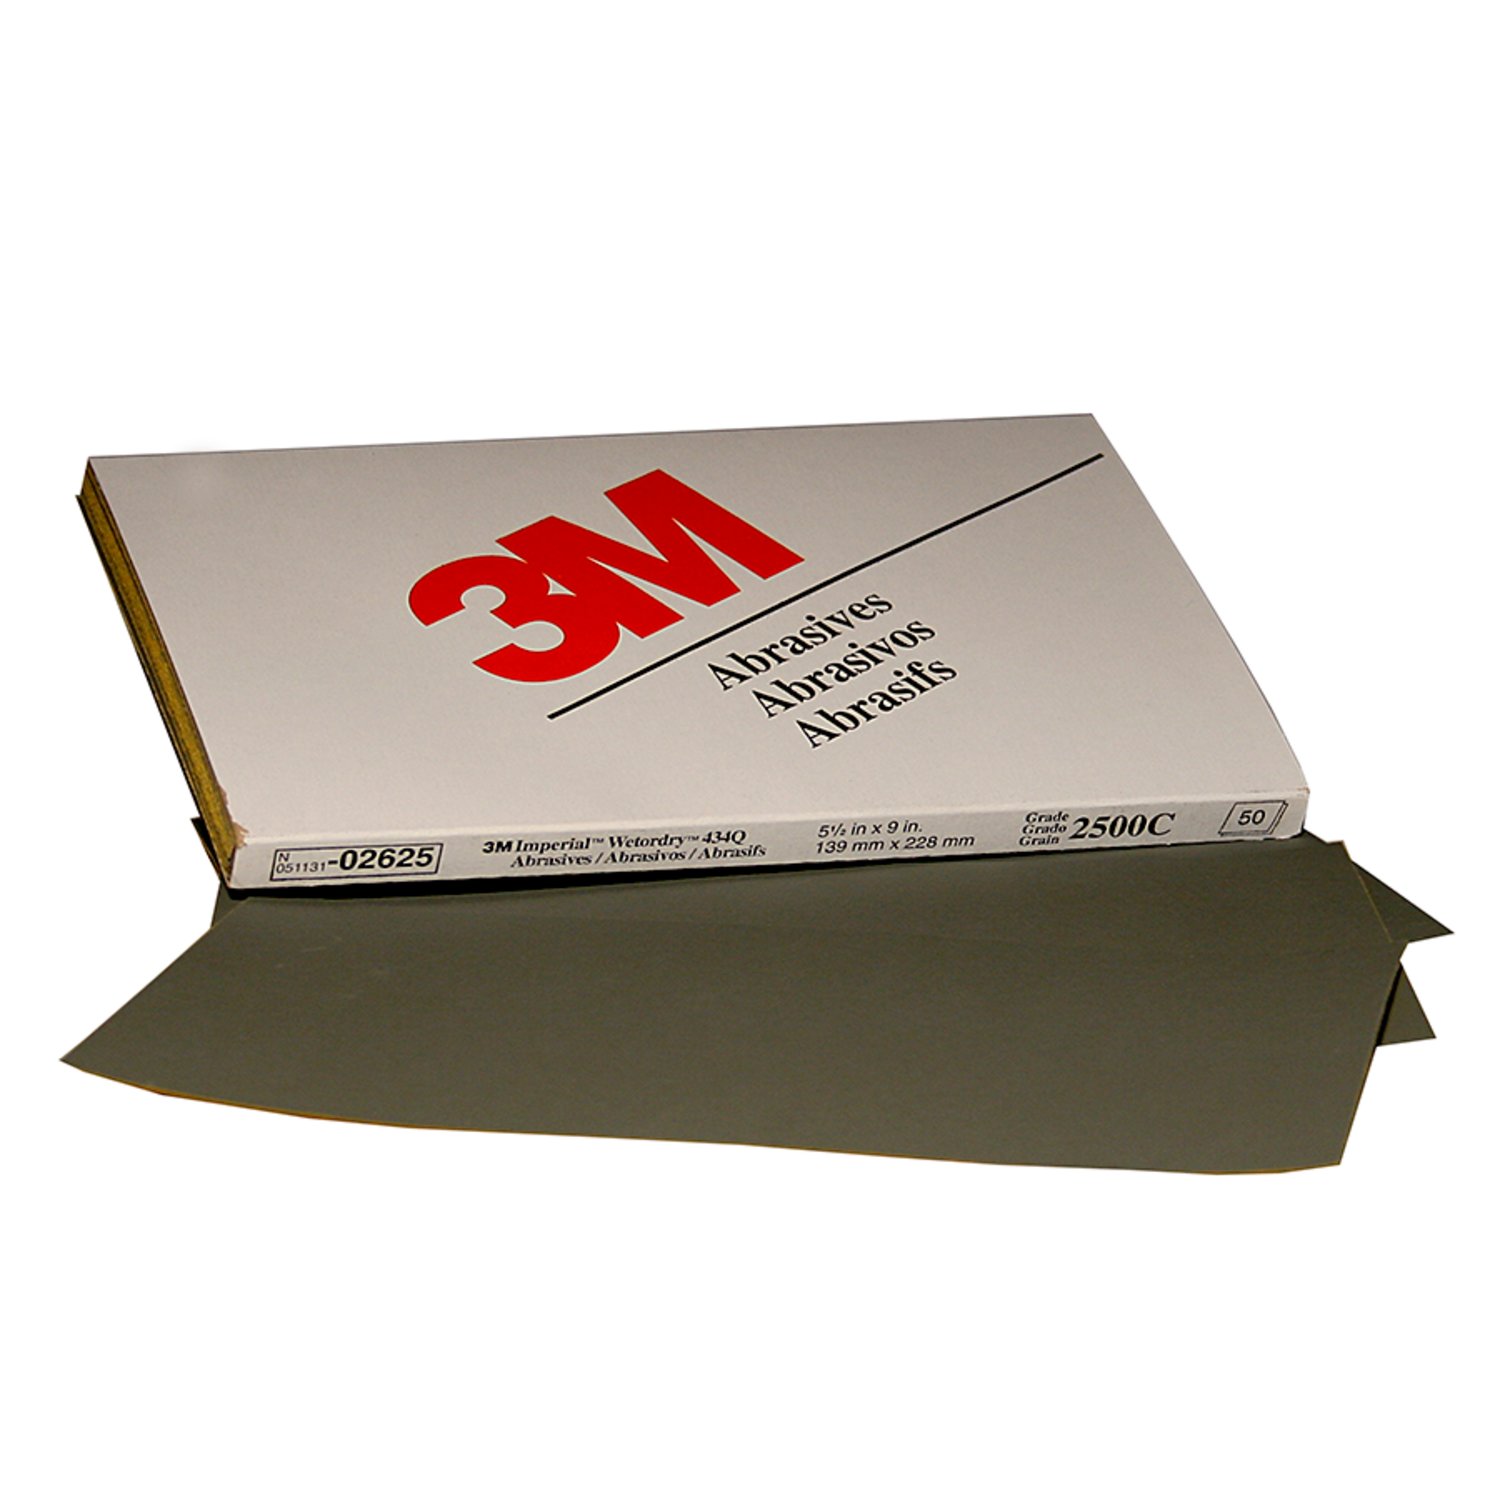 7000120123 - 3M Wetordry Abrasive Sheet, 02625, 2500, heavy duty, 5 1/2 in x 9 in,
50 sheets per carton, 5 cartons per case